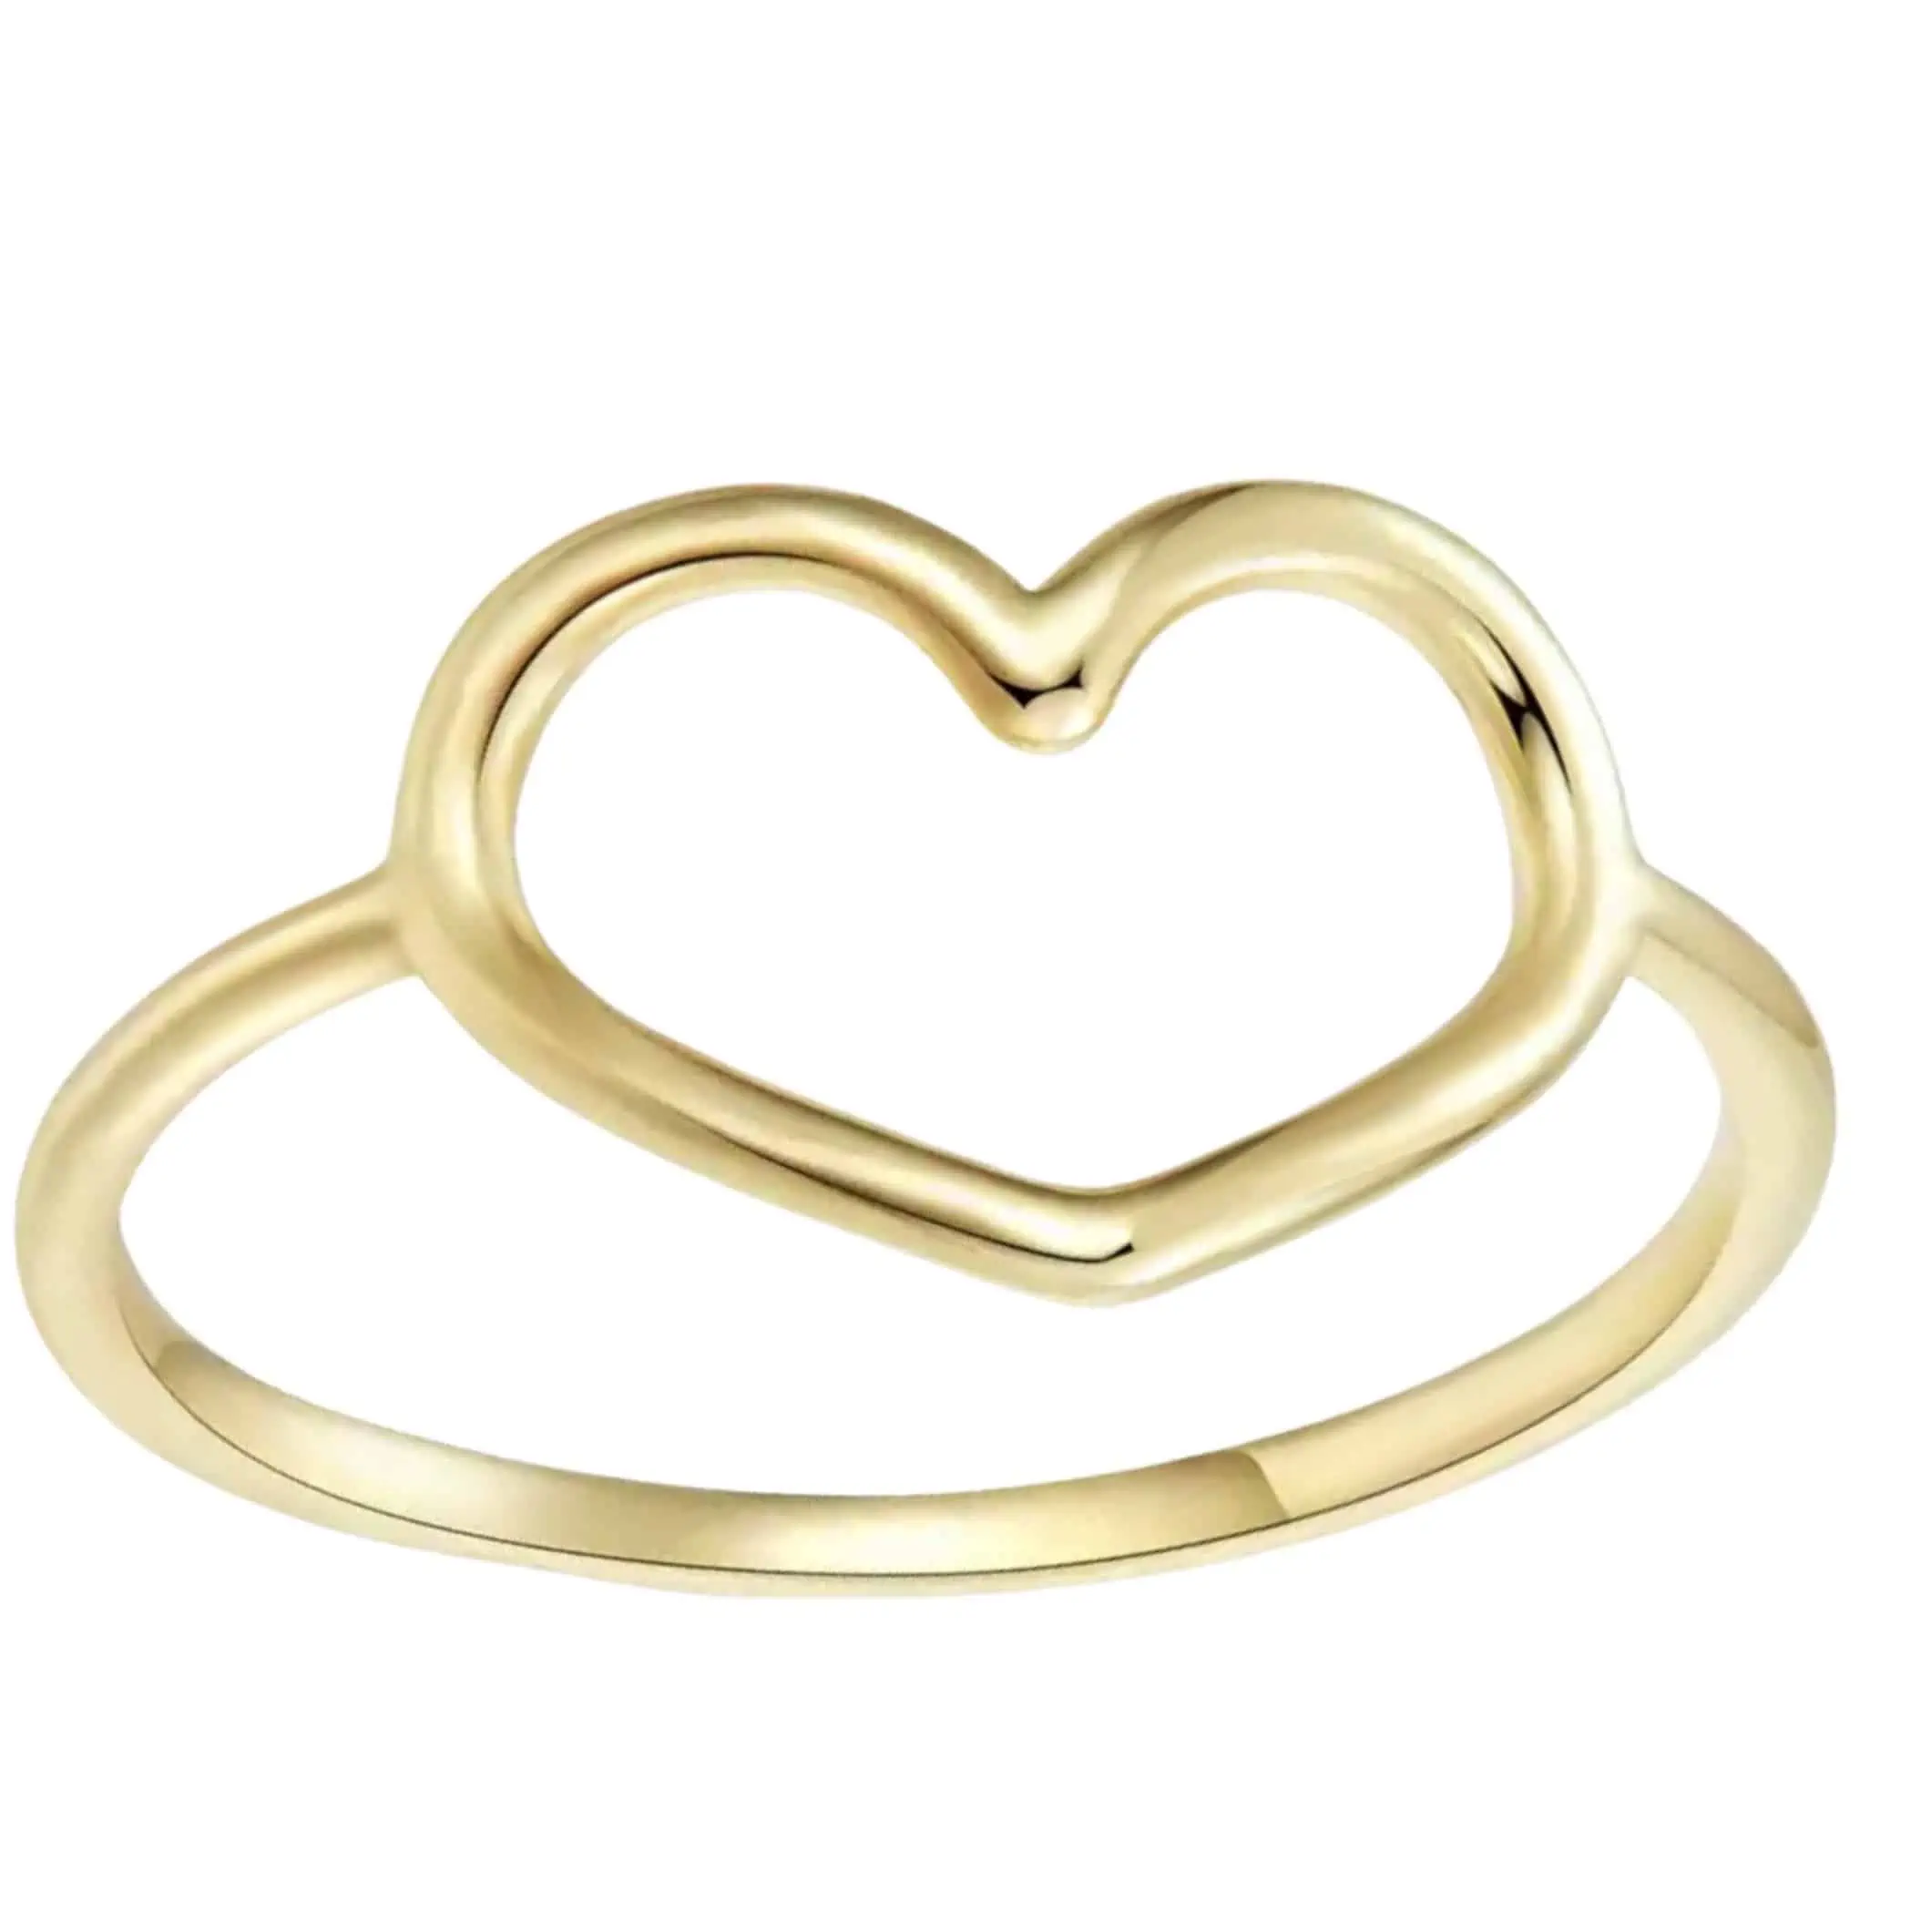 Product Afbeelding Vooraanzicht van onze nieuwe gouden ring. Deze prachtige ring met groot open hart is gemaakt van 925 sterling zilver met een laagje 18 karaat goud.